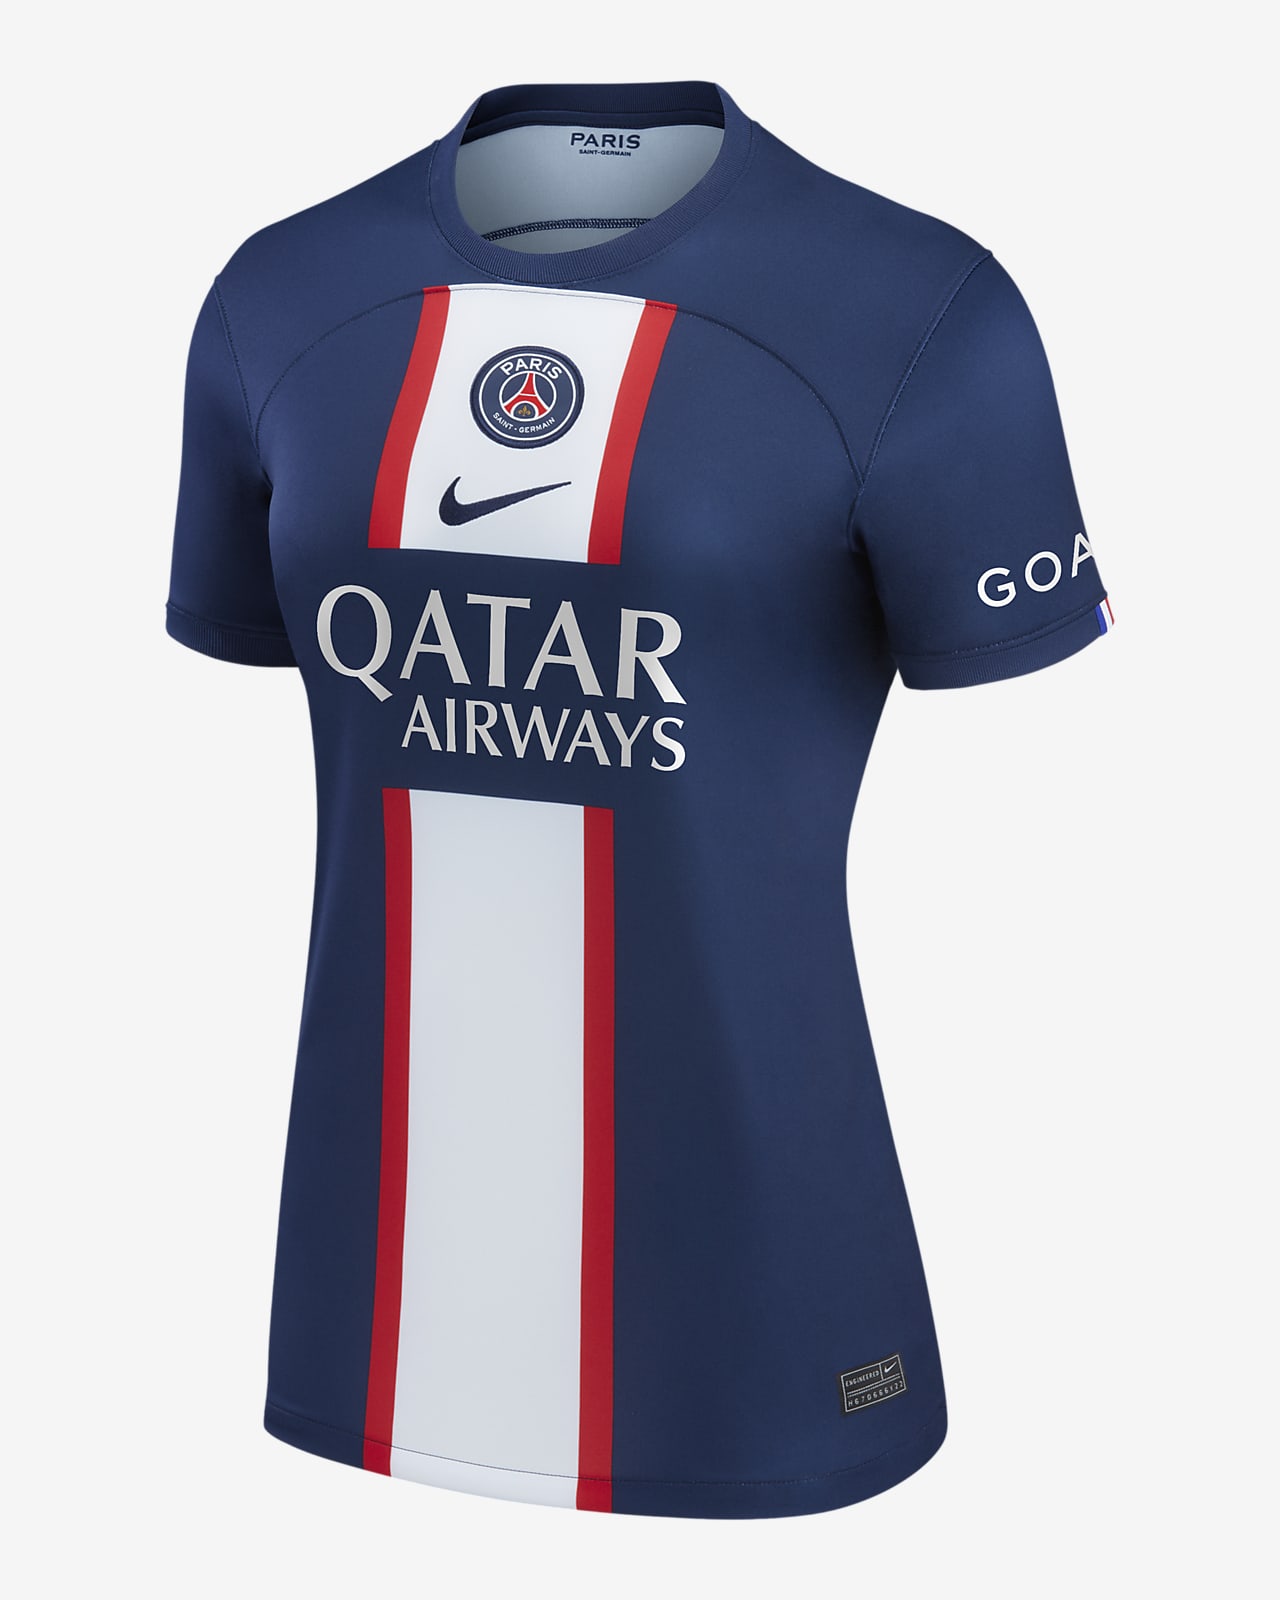 Jersey de fútbol Nike para mujer del Paris local (Sergio Ramos) 2022/23 Stadium. Nike.com